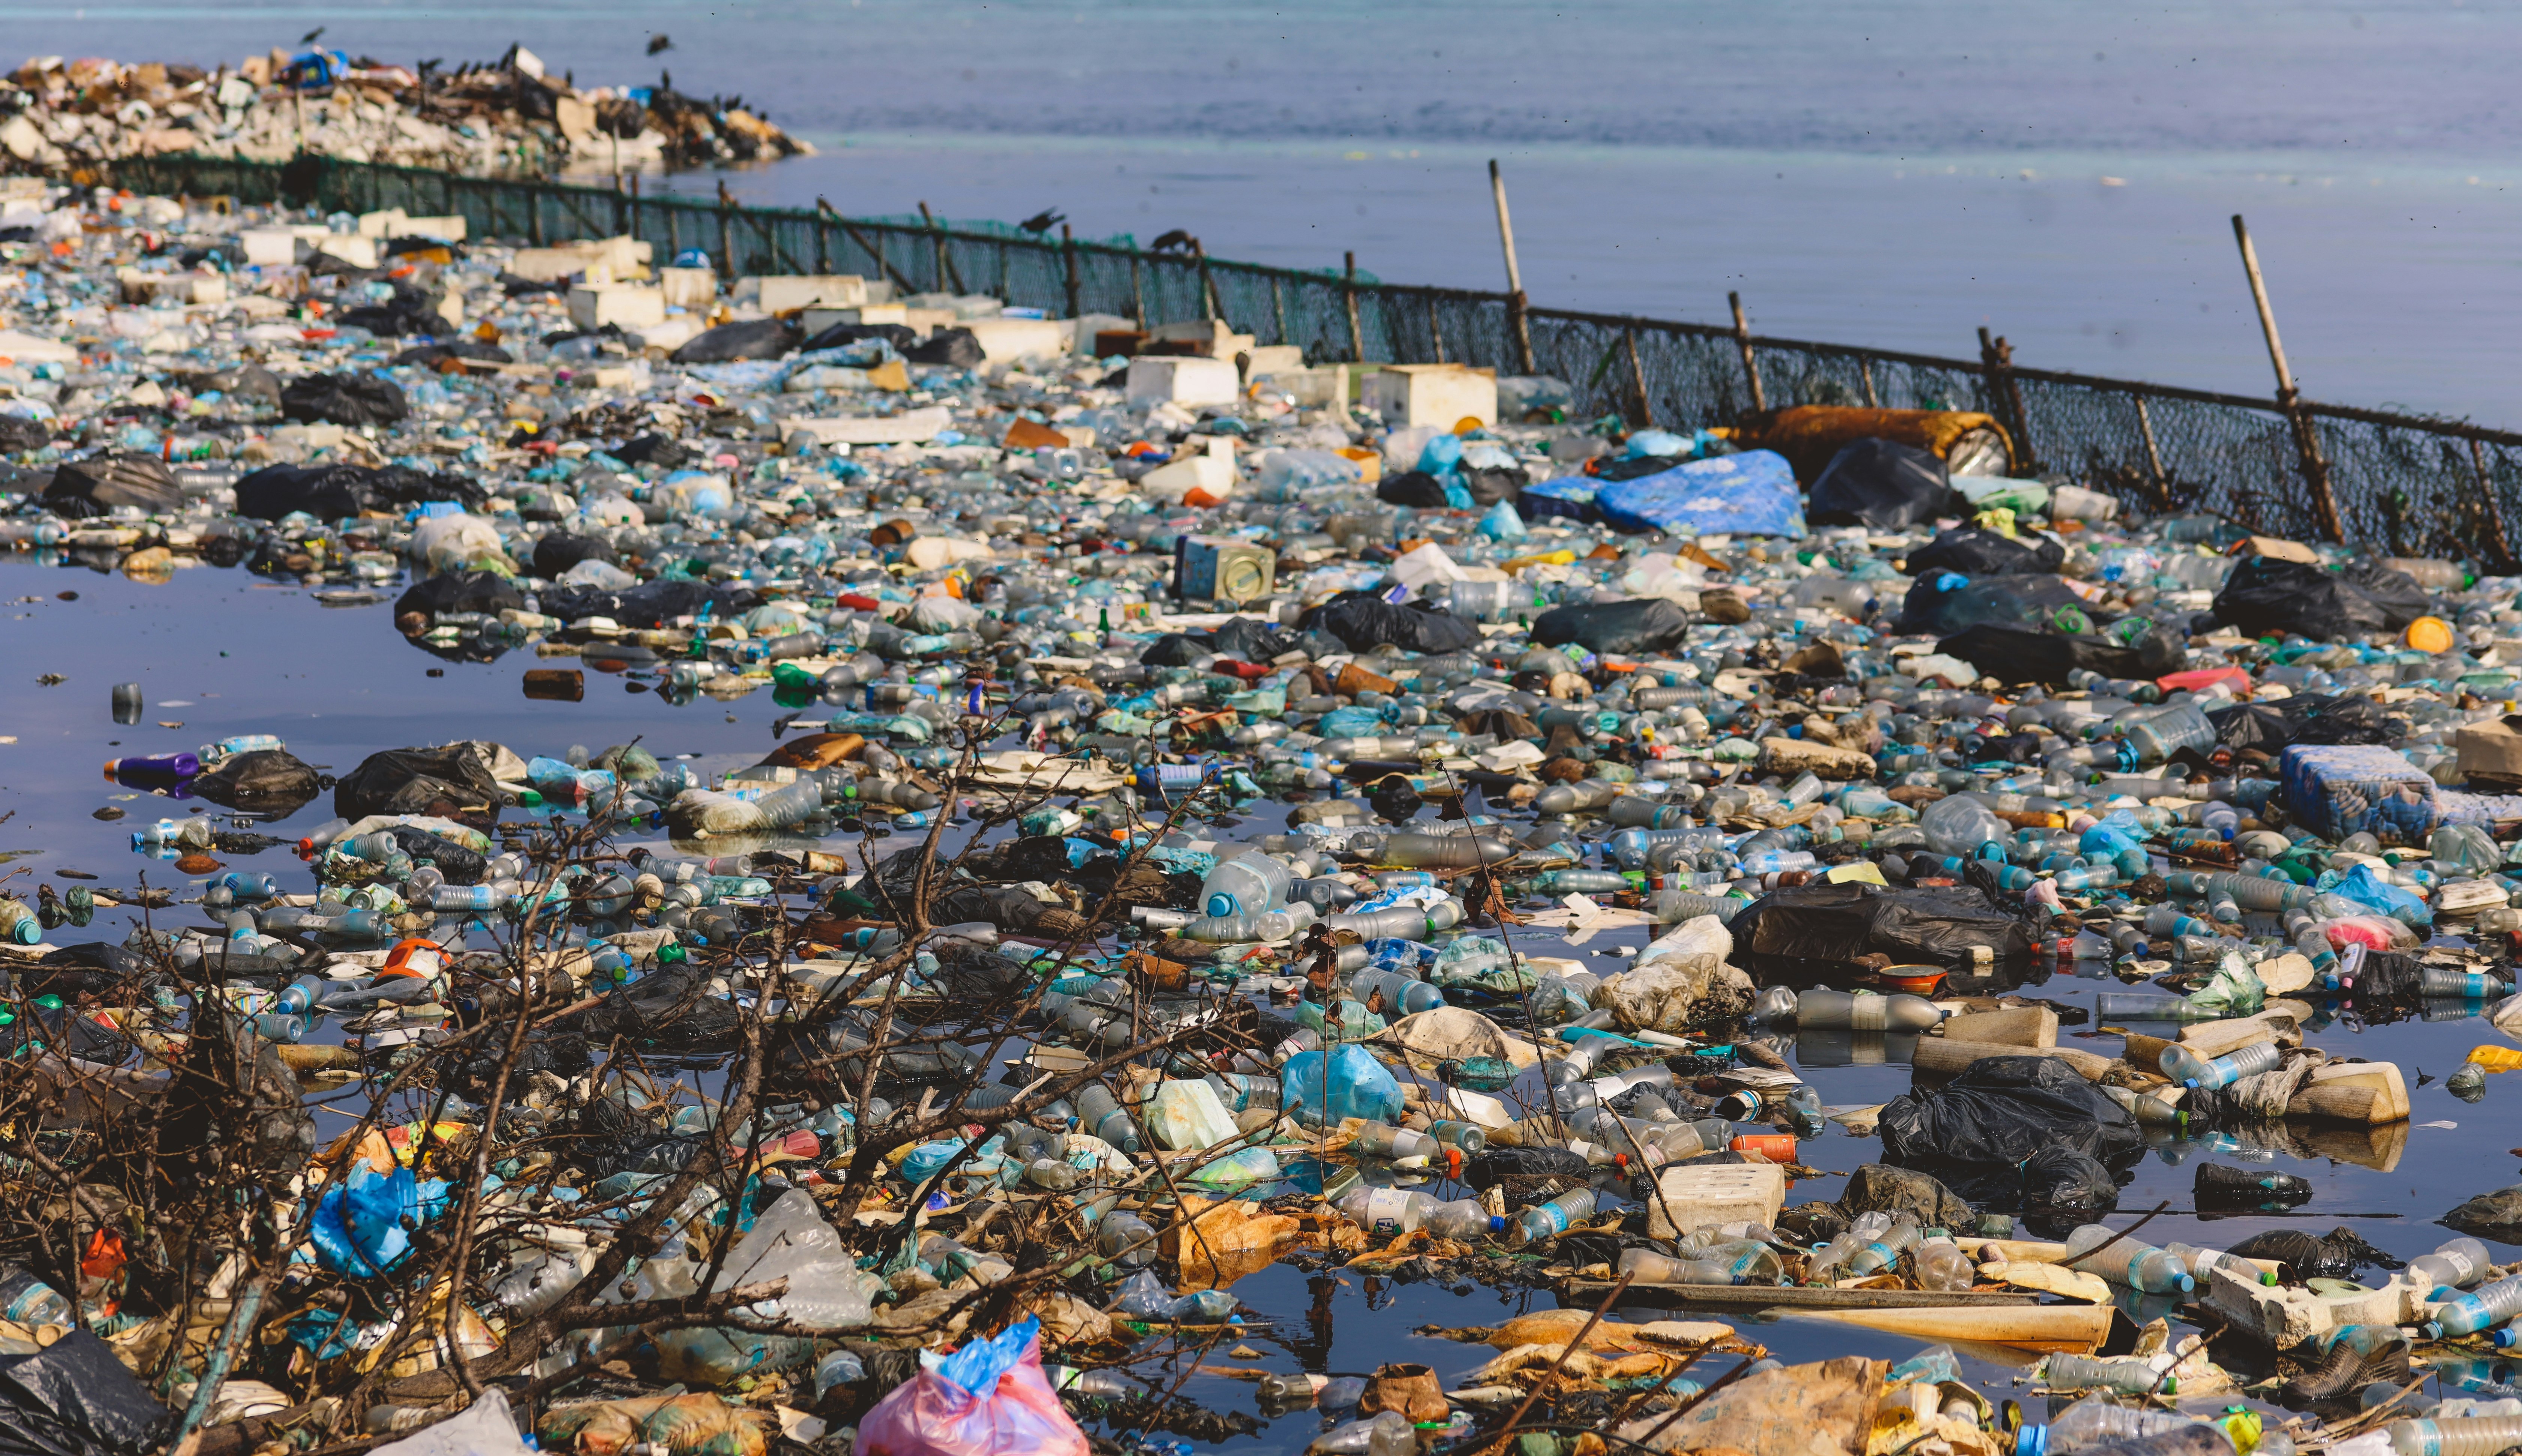 Le Maldive sono anche alle prese con i problemi di smaltimento dei rifiuti.